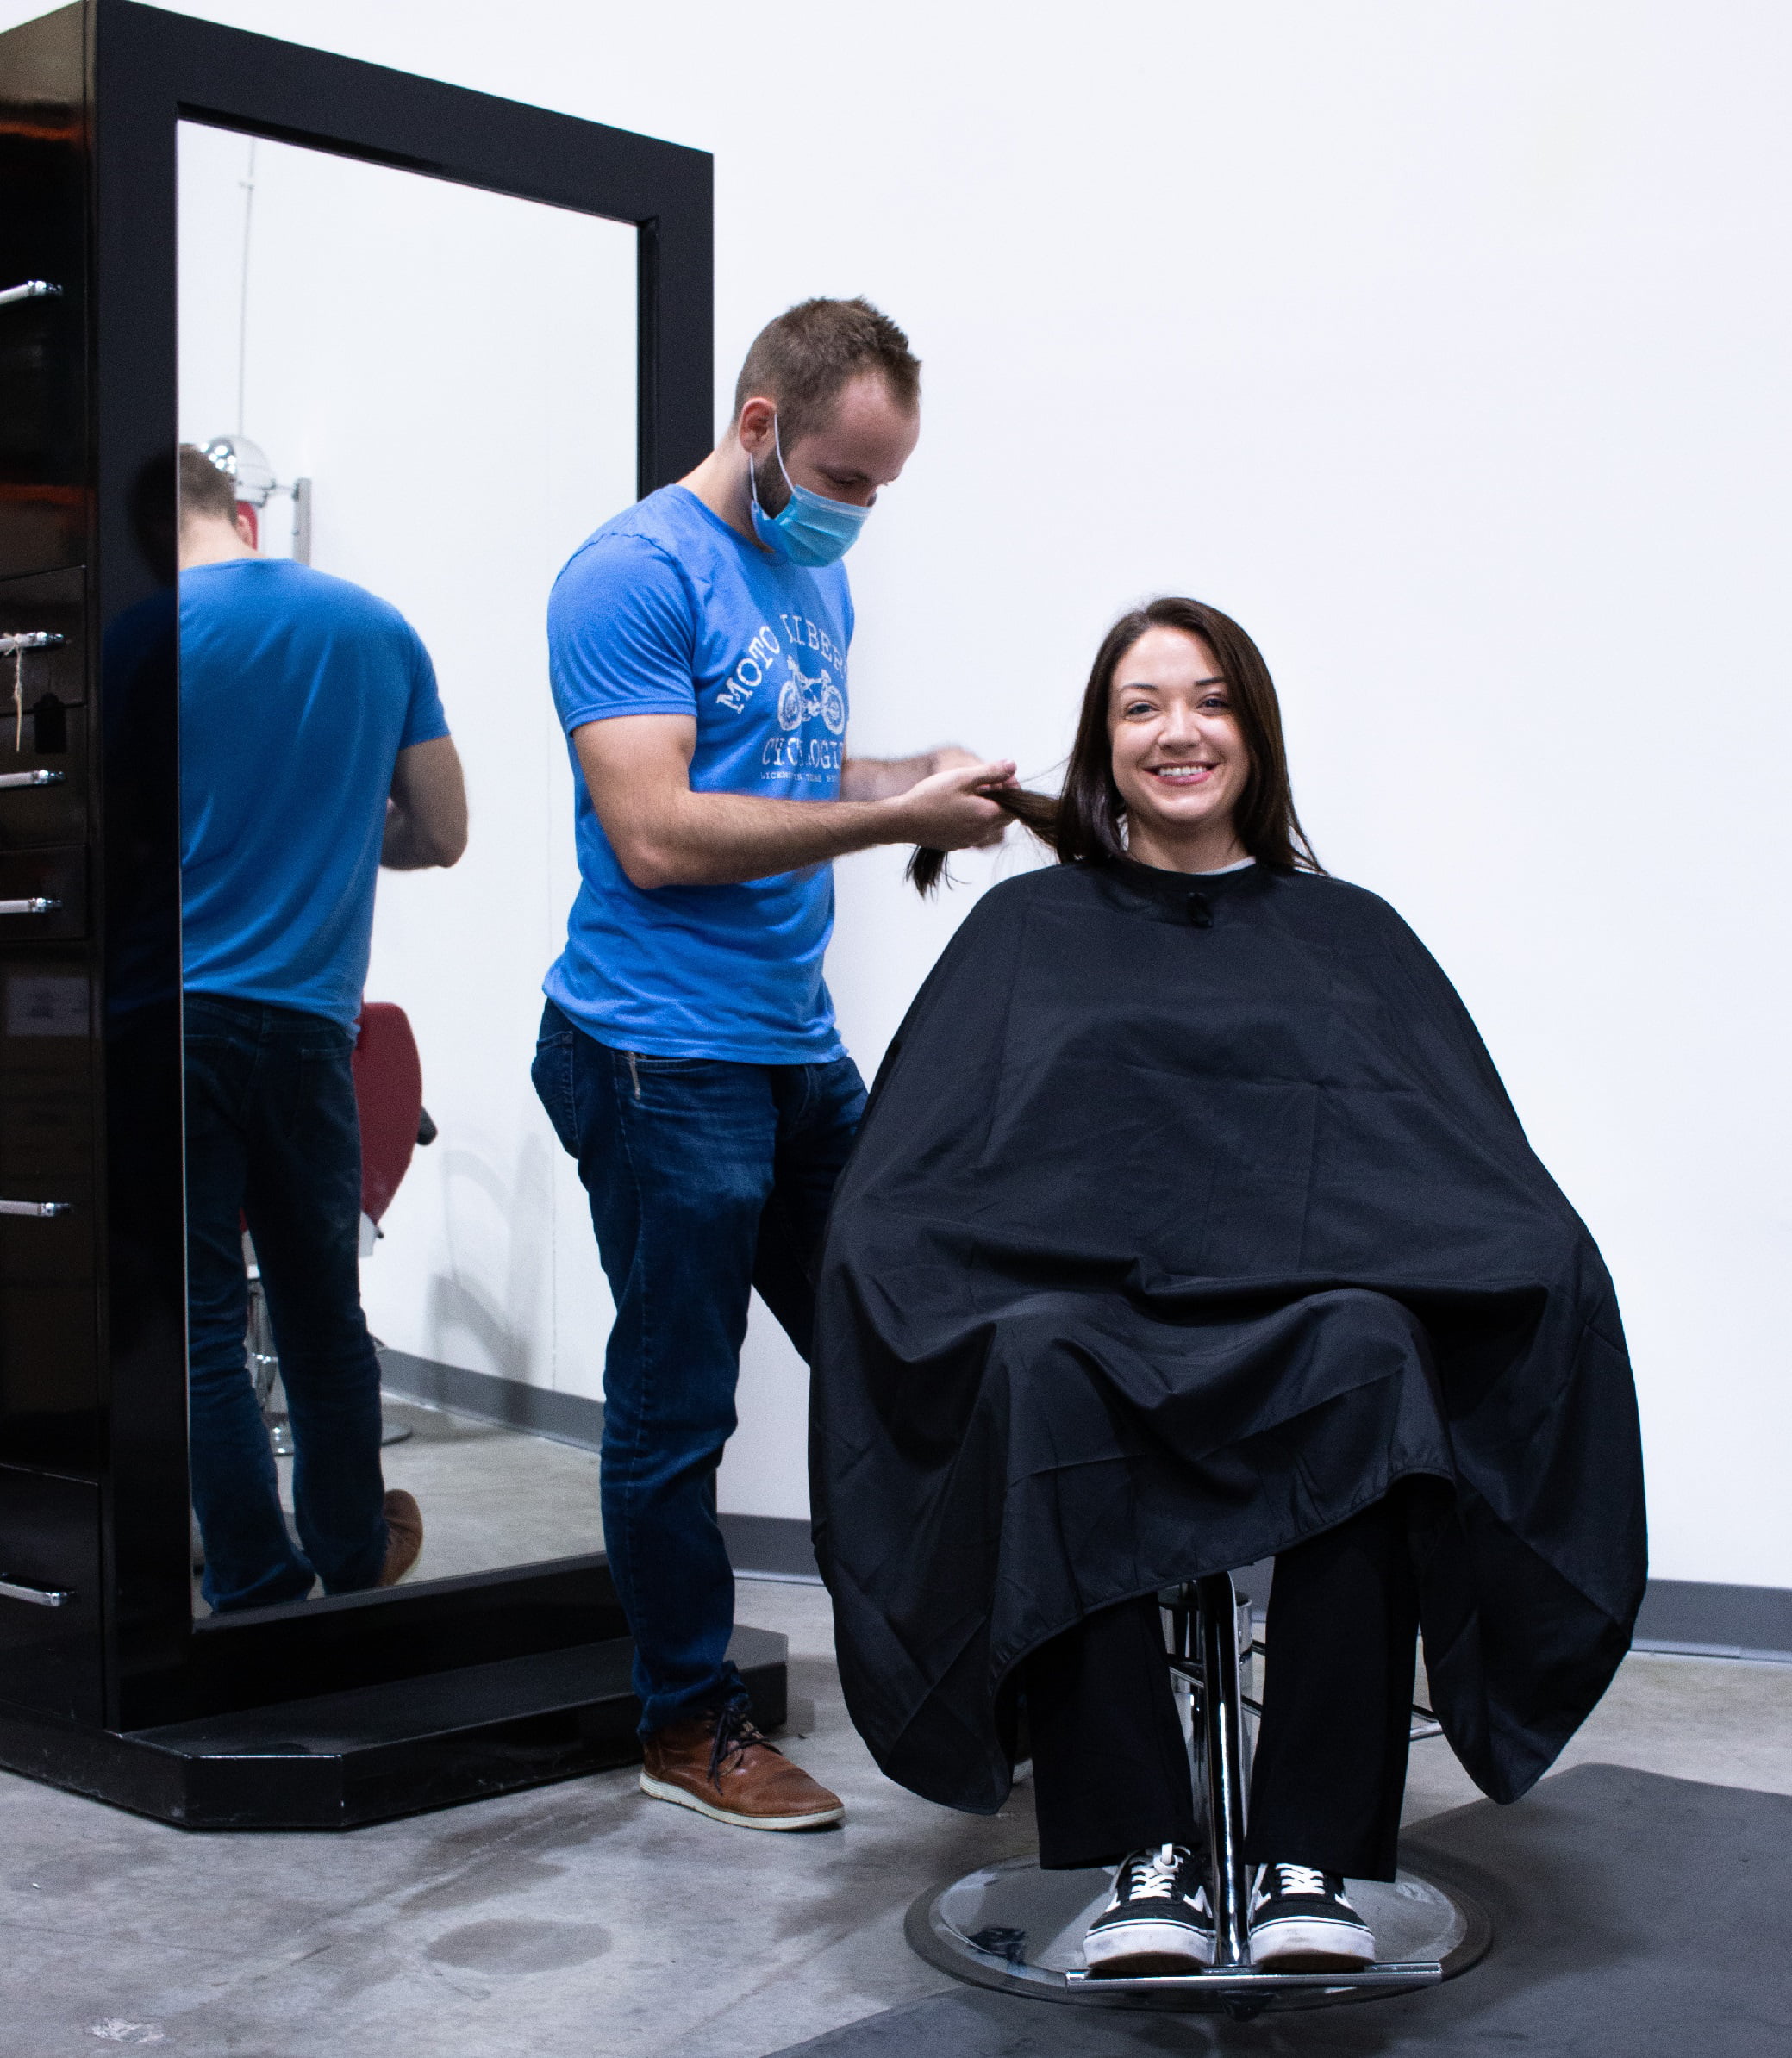 Black & Gold Barber Hairdressing Capes – K5 International